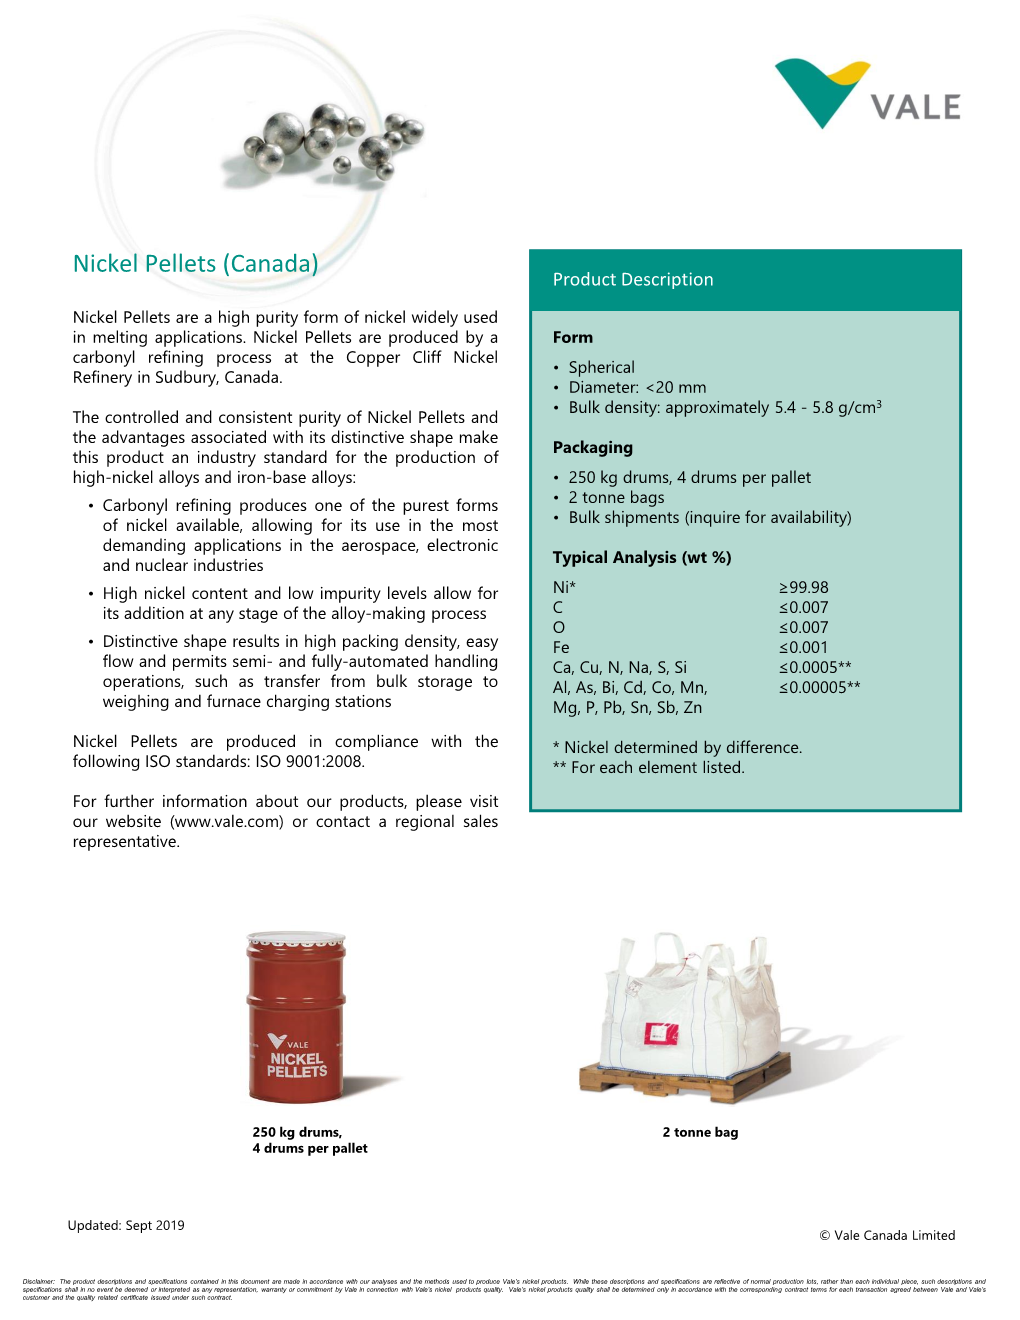 Nickel Pellets (Canada) Product Description